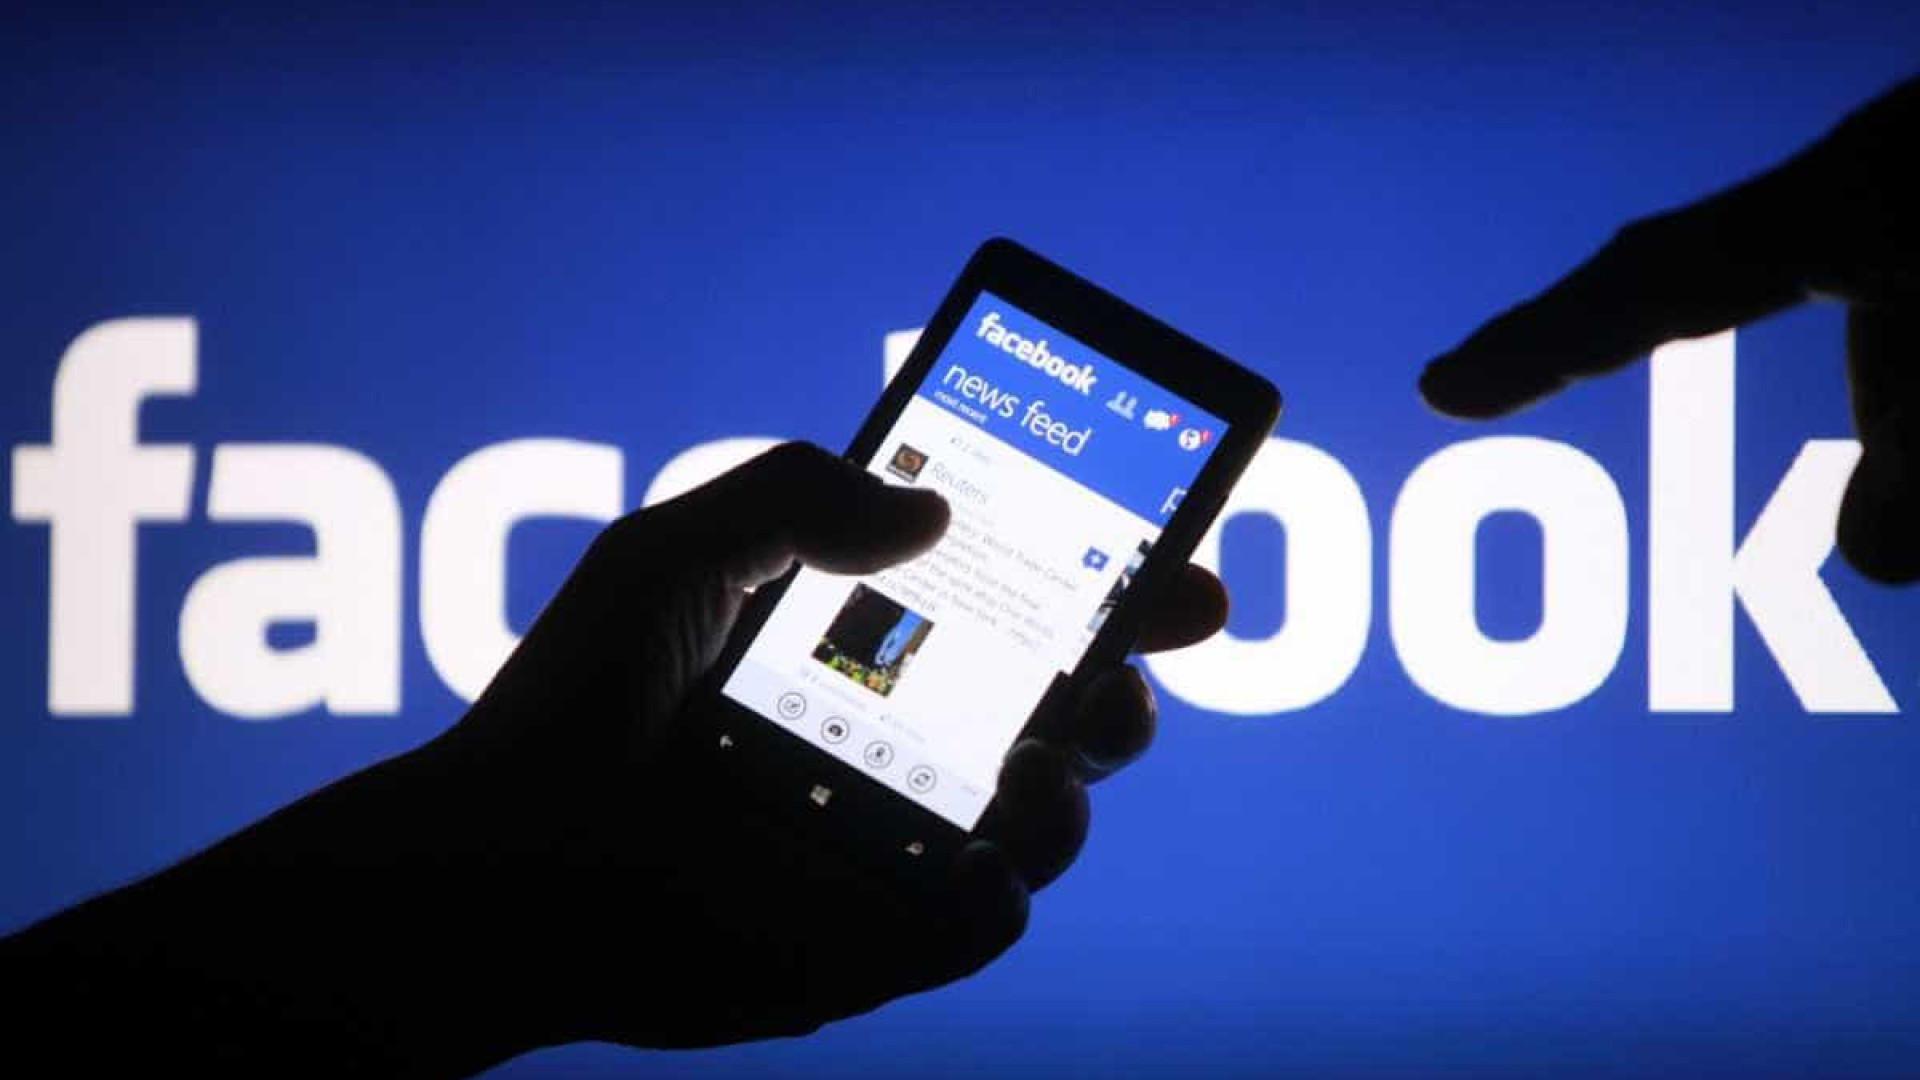 Facebook anuncia exclusão de mais de 50 milhões de postagens falsas